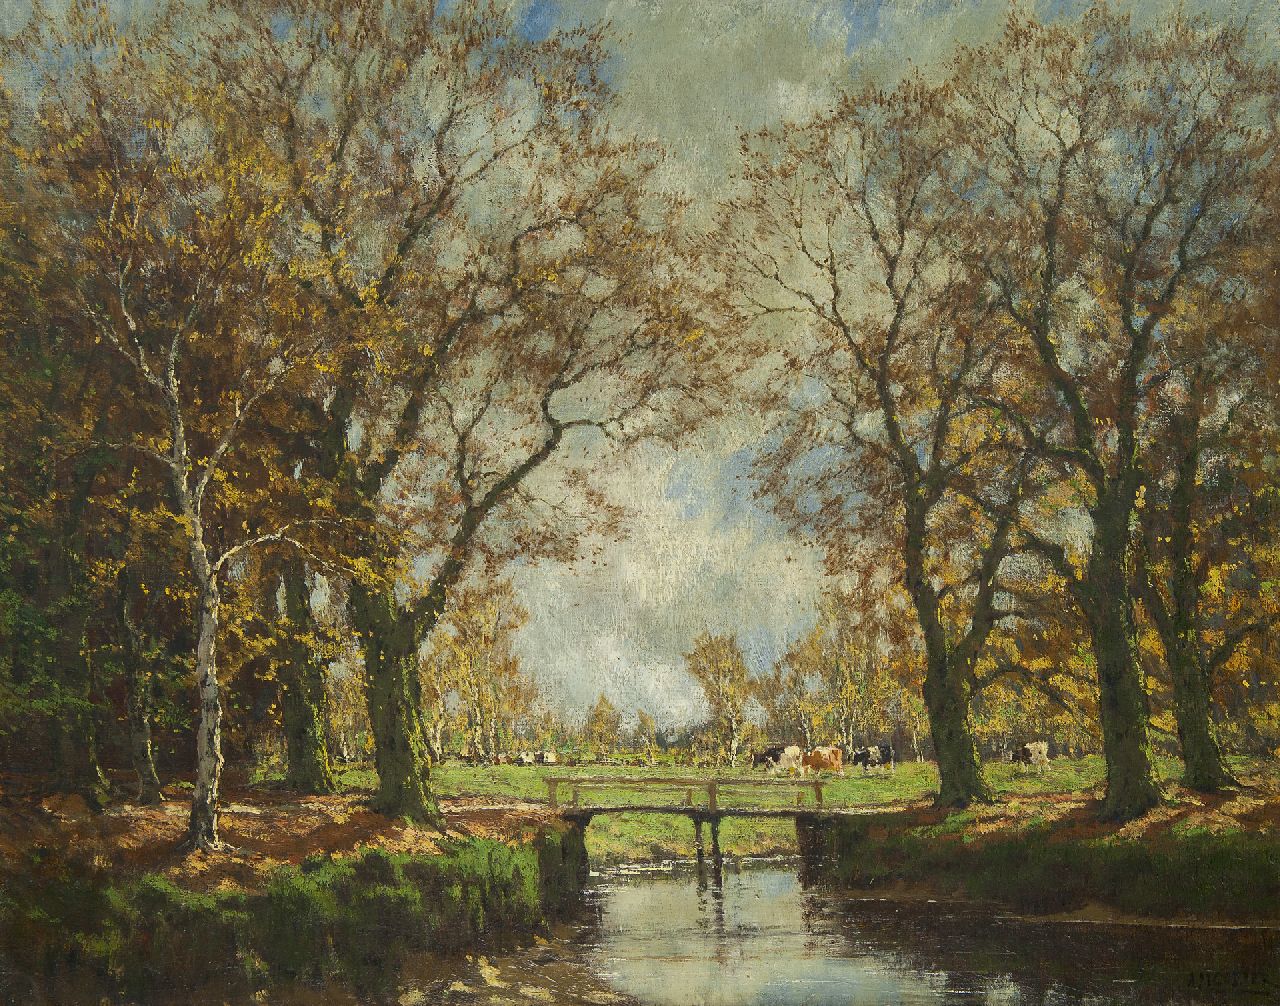 Gorter A.M.  | 'Arnold' Marc Gorter | Schilderijen te koop aangeboden | Landschap met beek en koeien, olieverf op doek 62,3 x 79,1 cm, gesigneerd rechtsonder